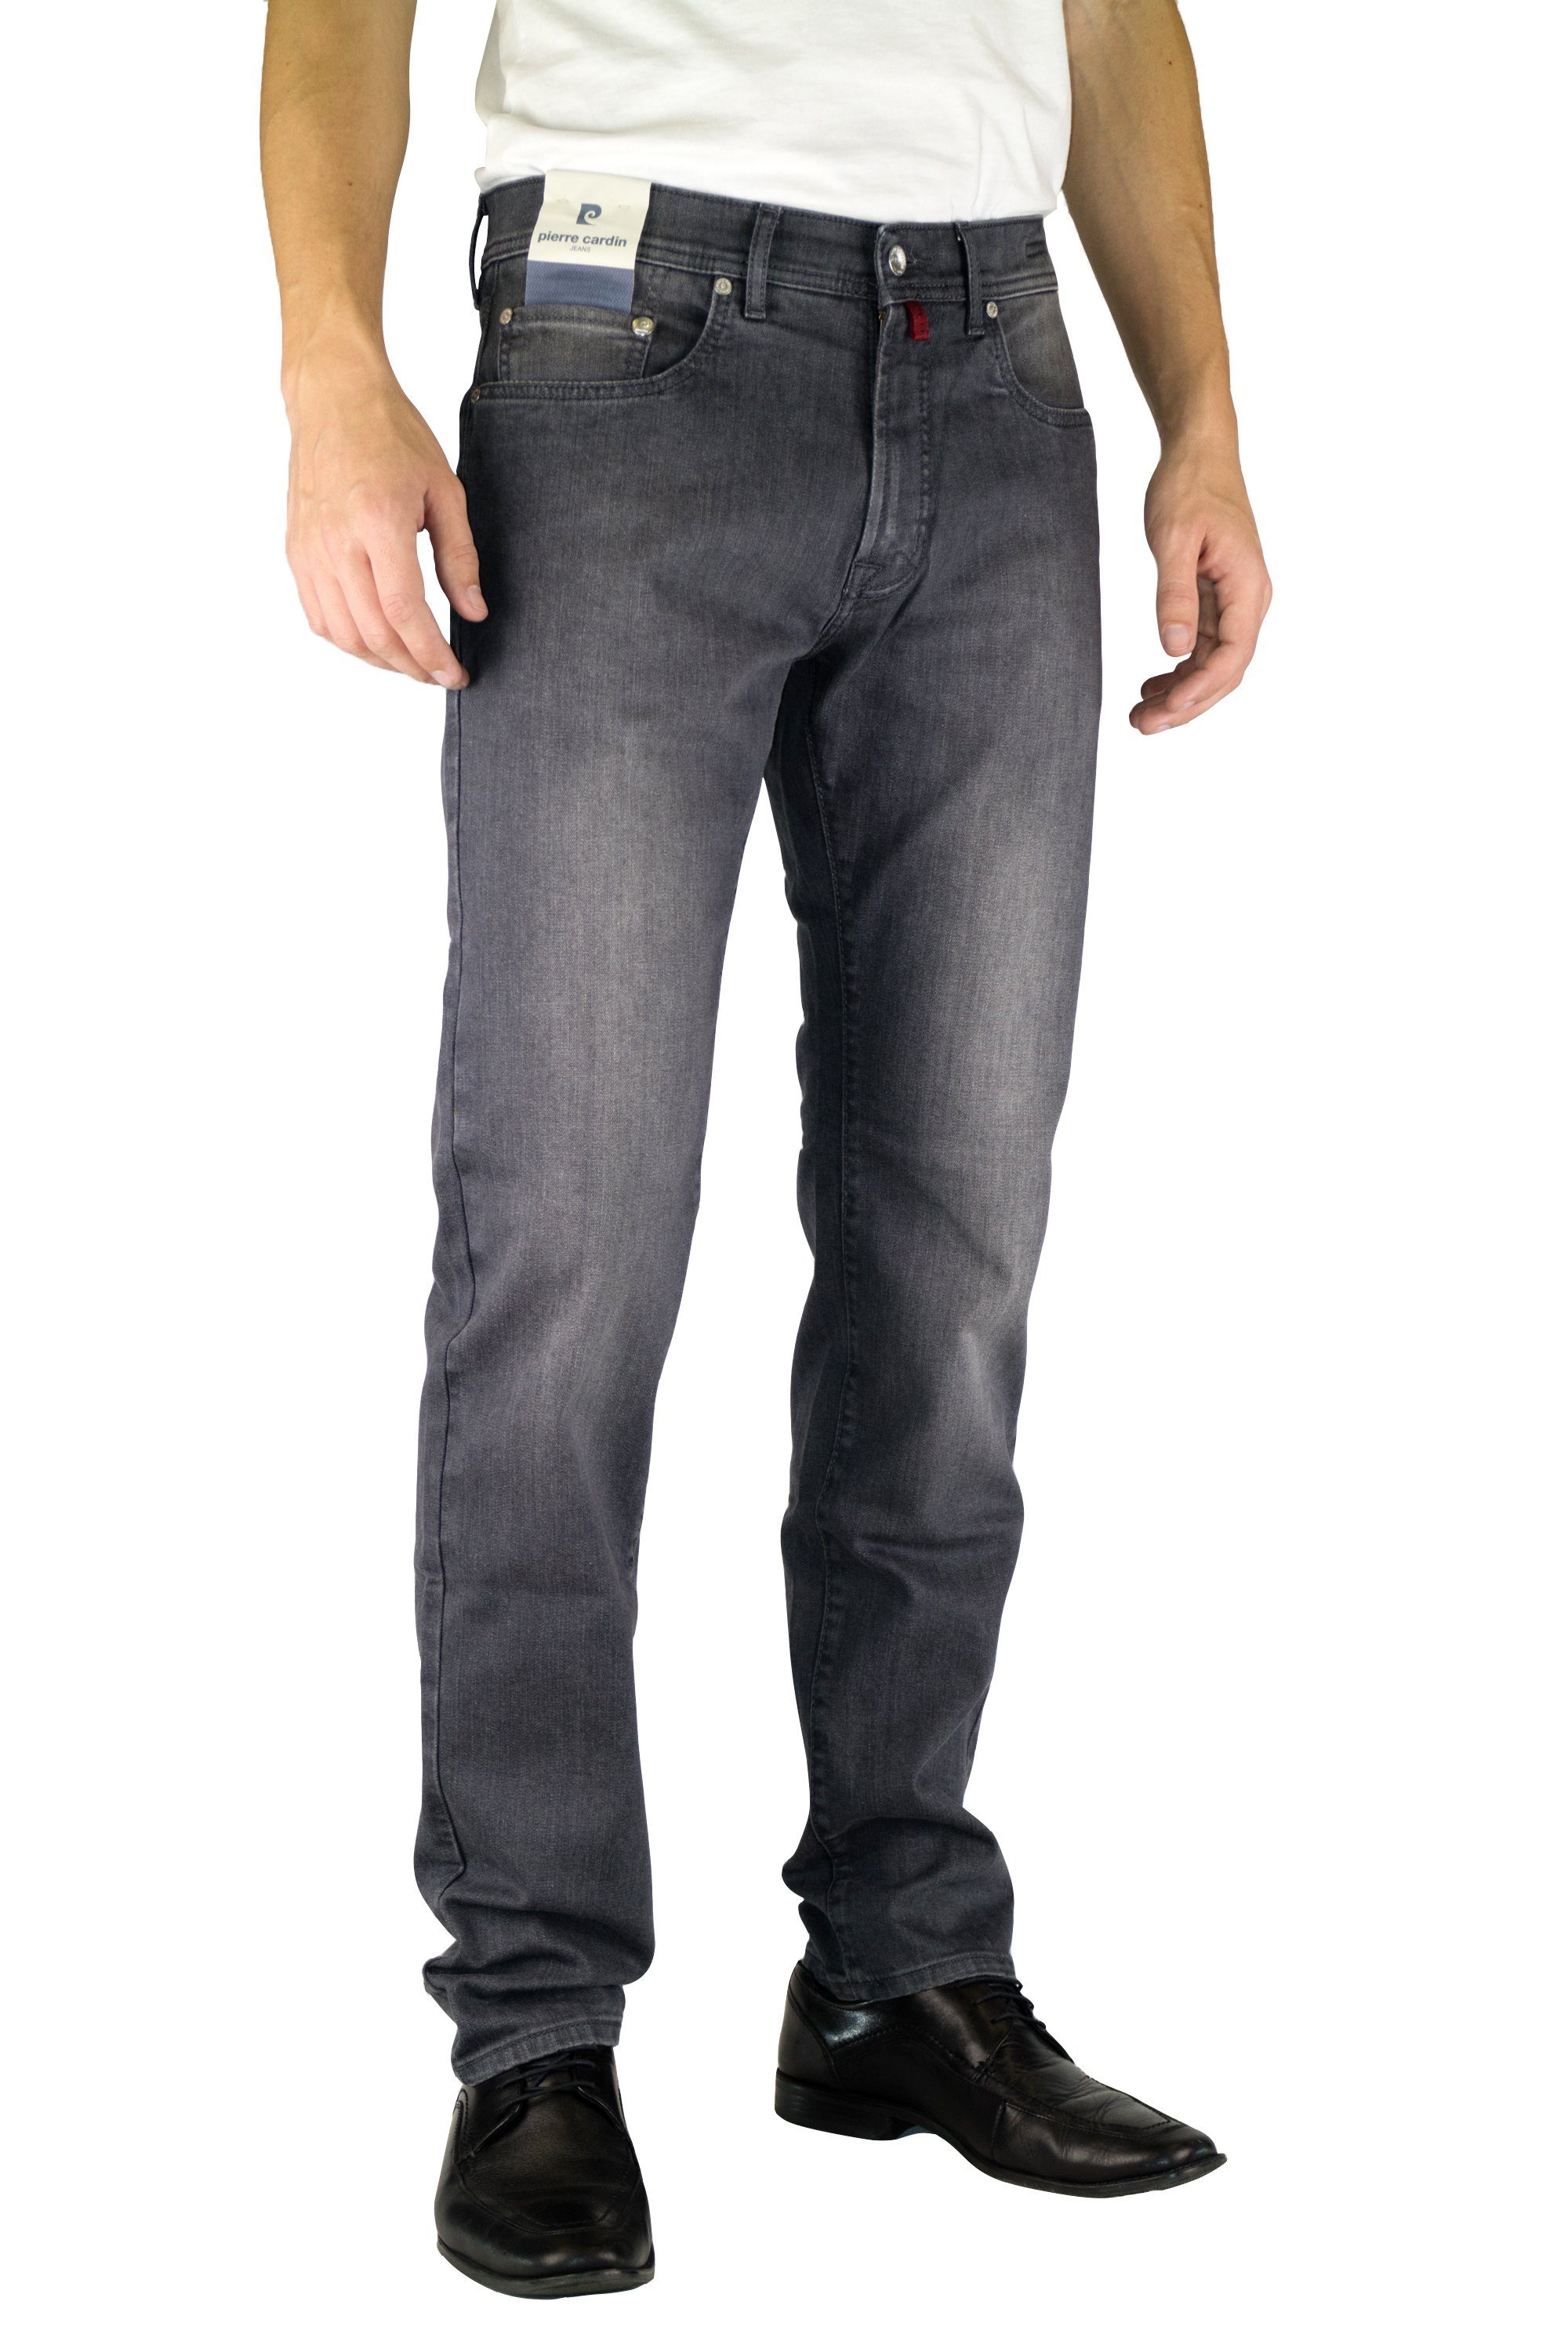 Pierre Cardin 5-Pocket-Jeans PIERRE CARDIN LYON light grey used 3091 912.82